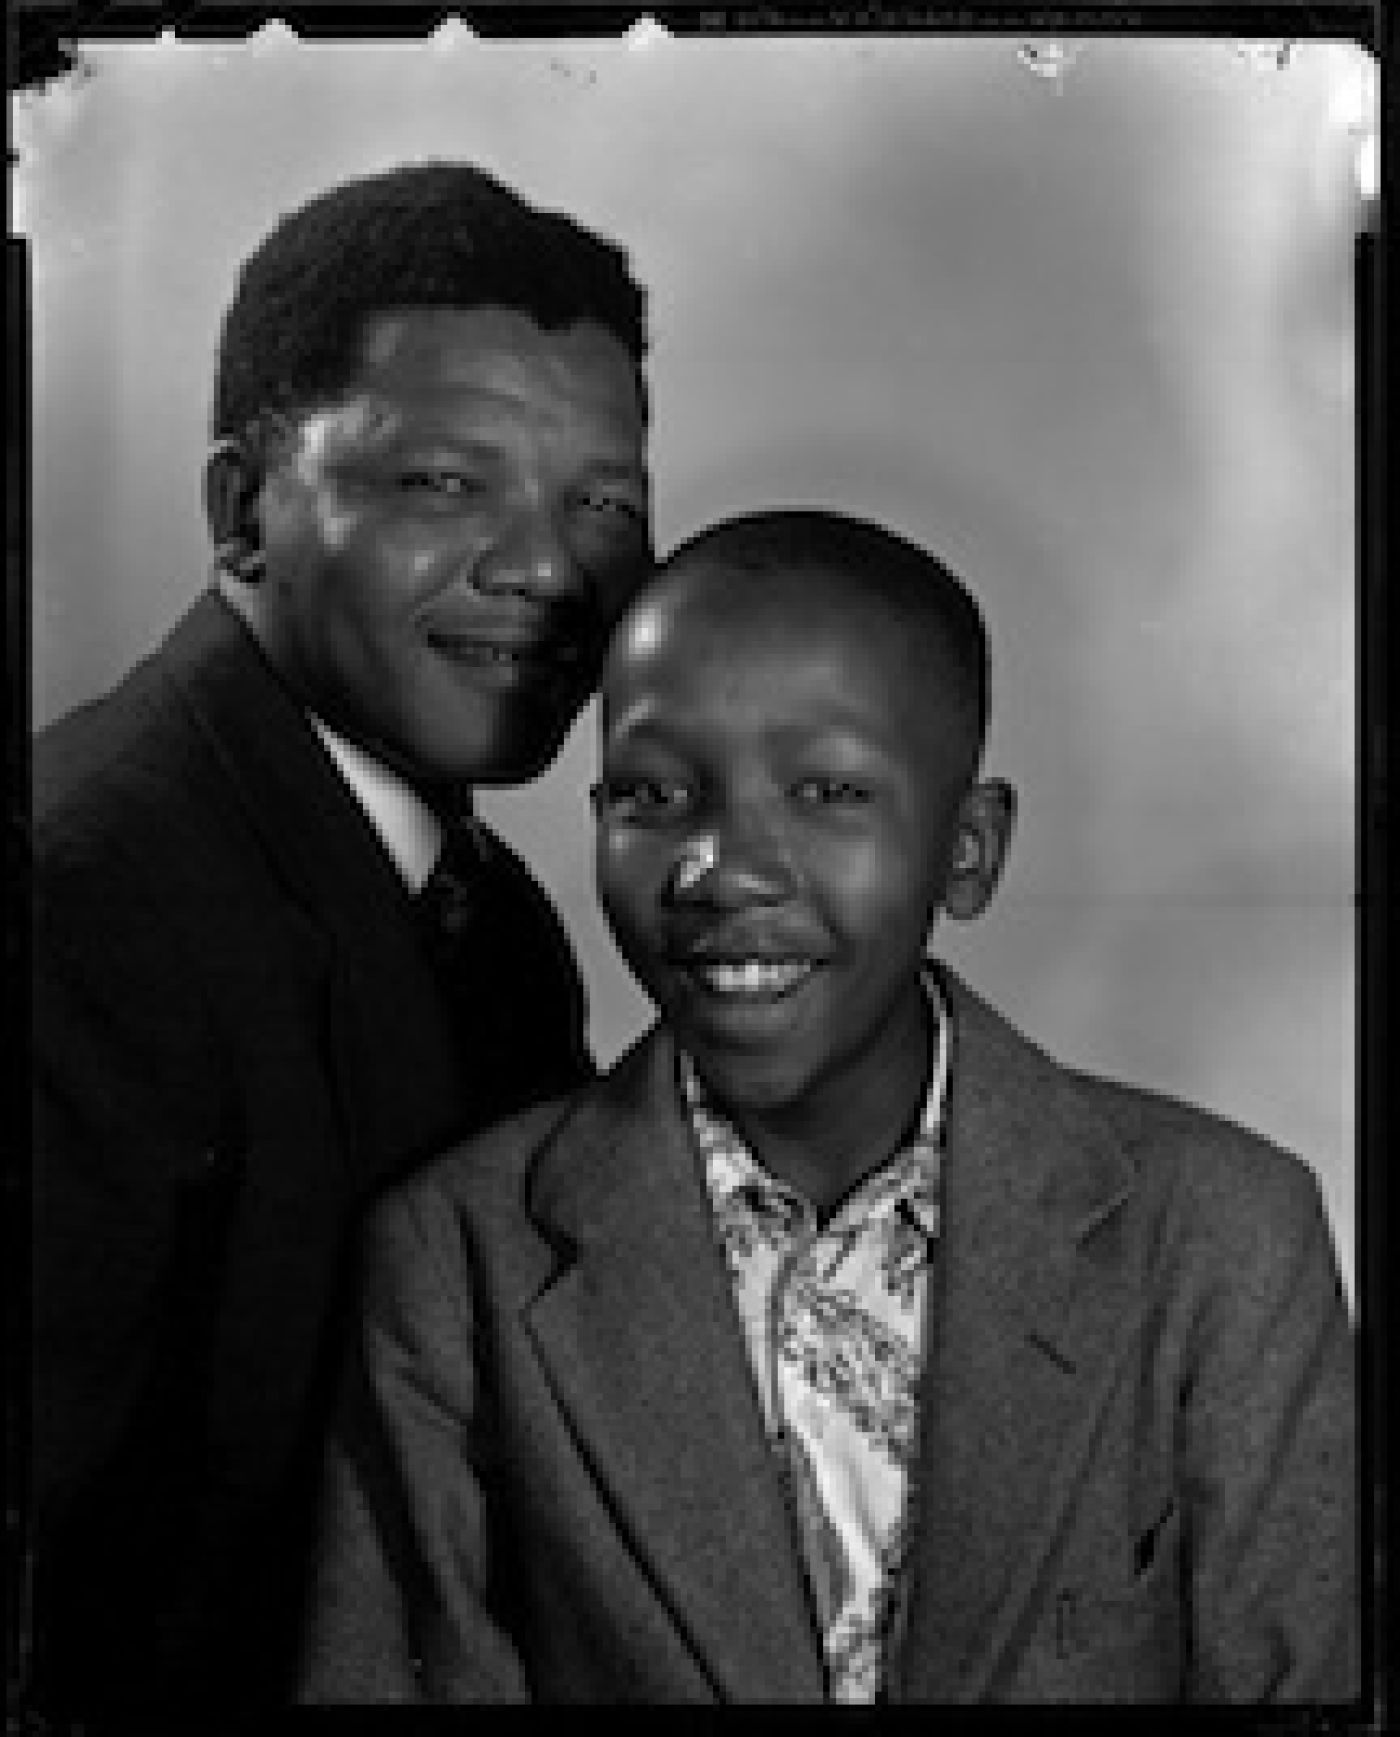 Nelson Mandela and his son Thembikile Mandela